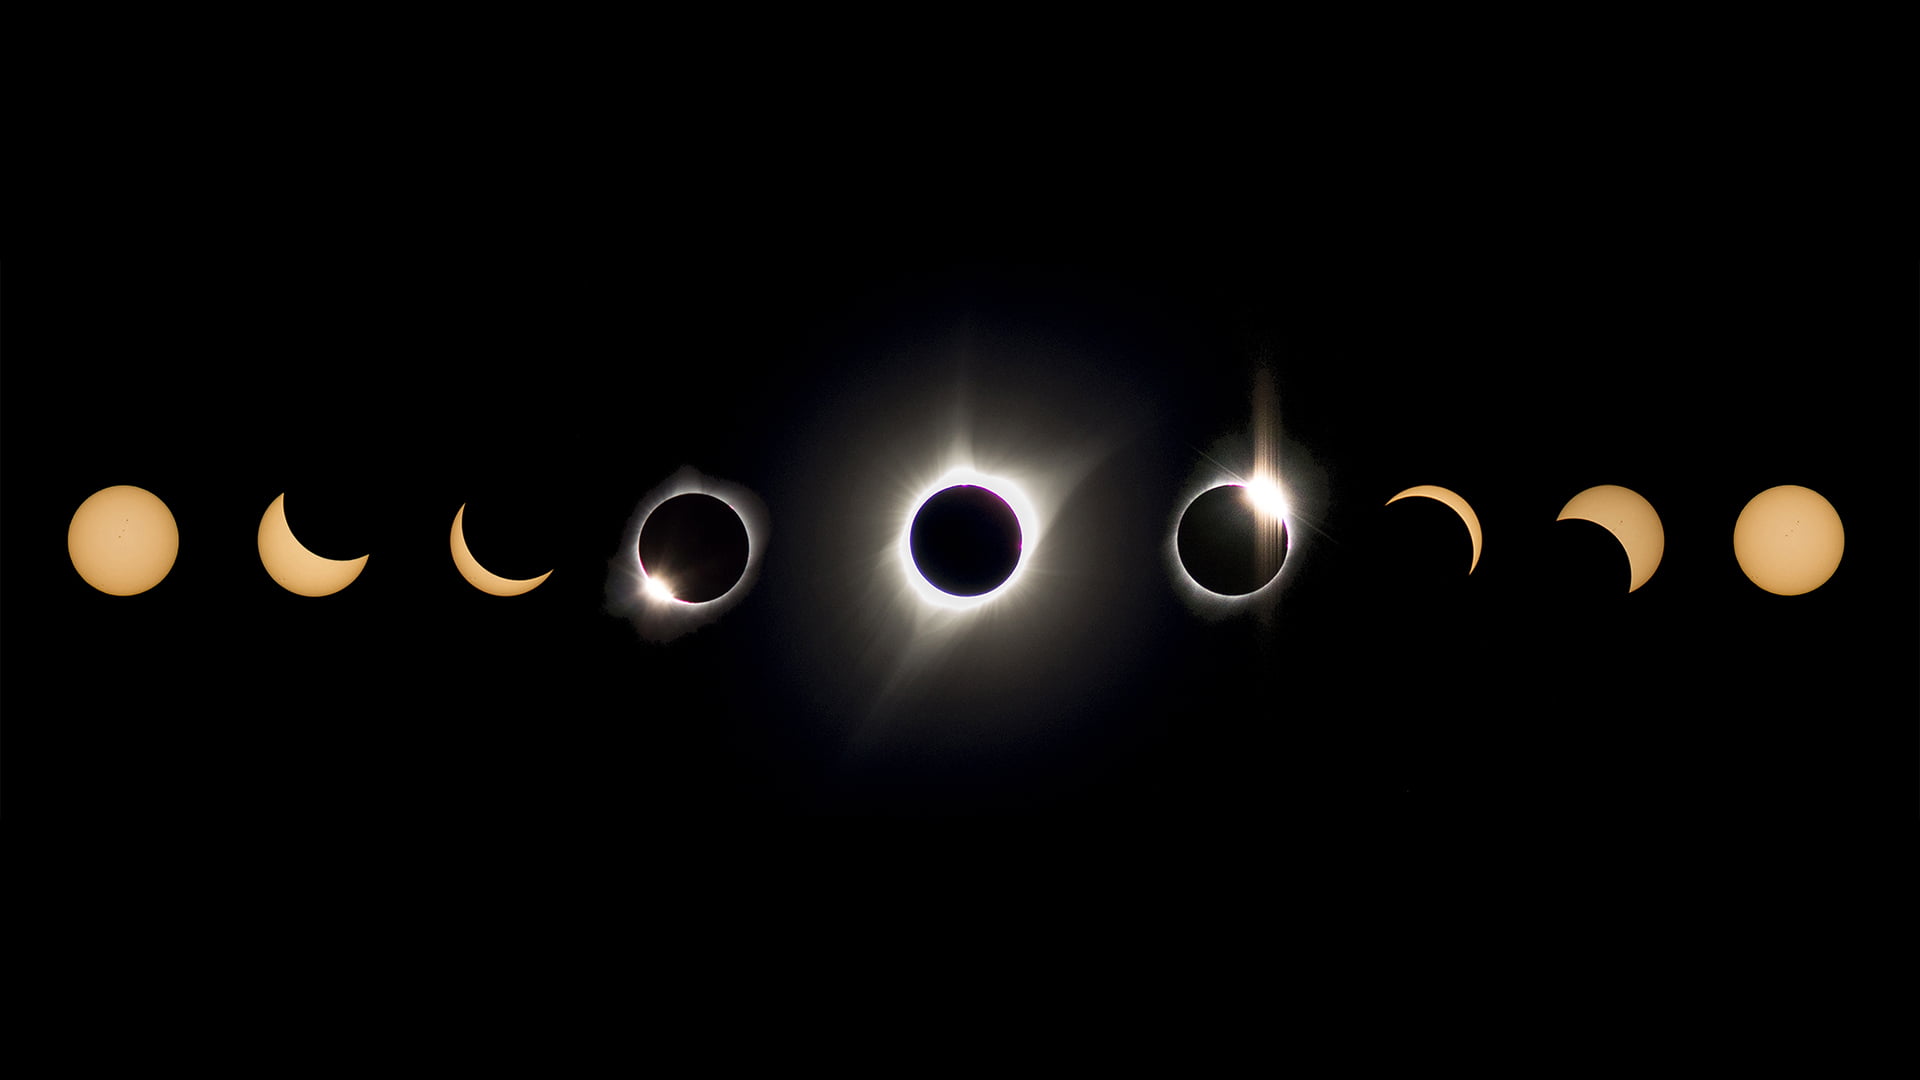 assorted moon illustration, eclipse, space, sun rays, illuminated